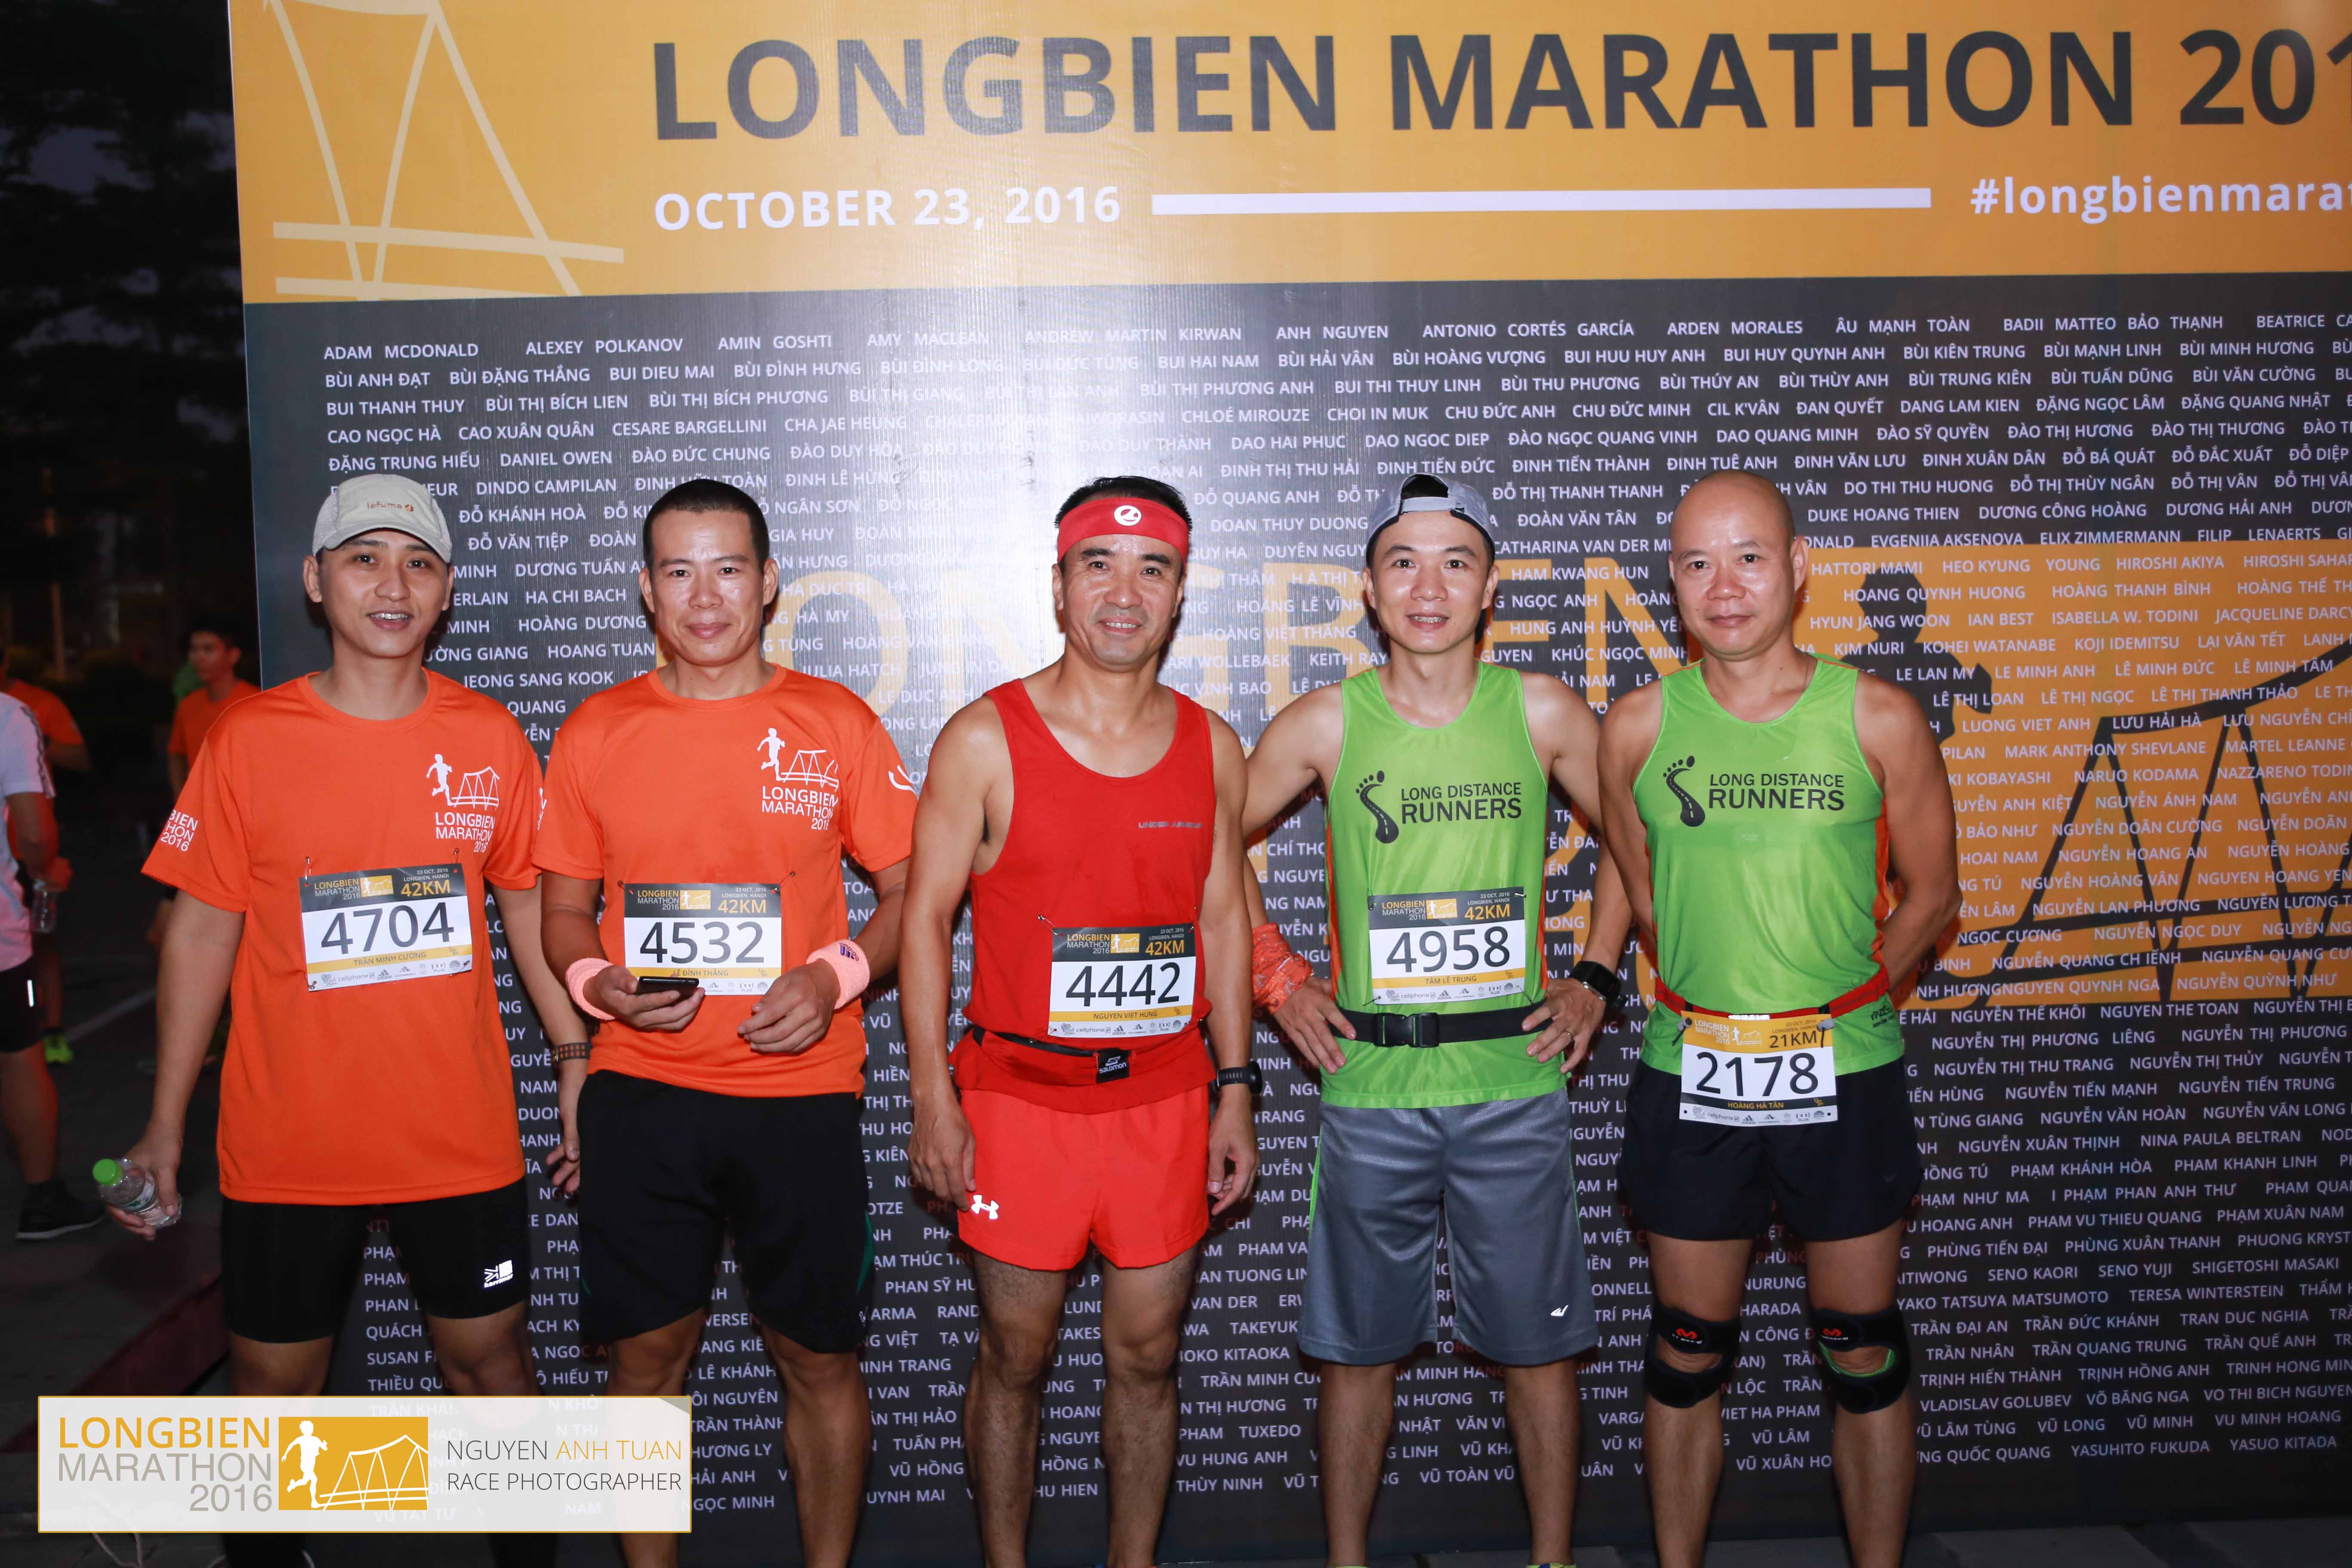 Collection 1 - Longbien Marathon 2016